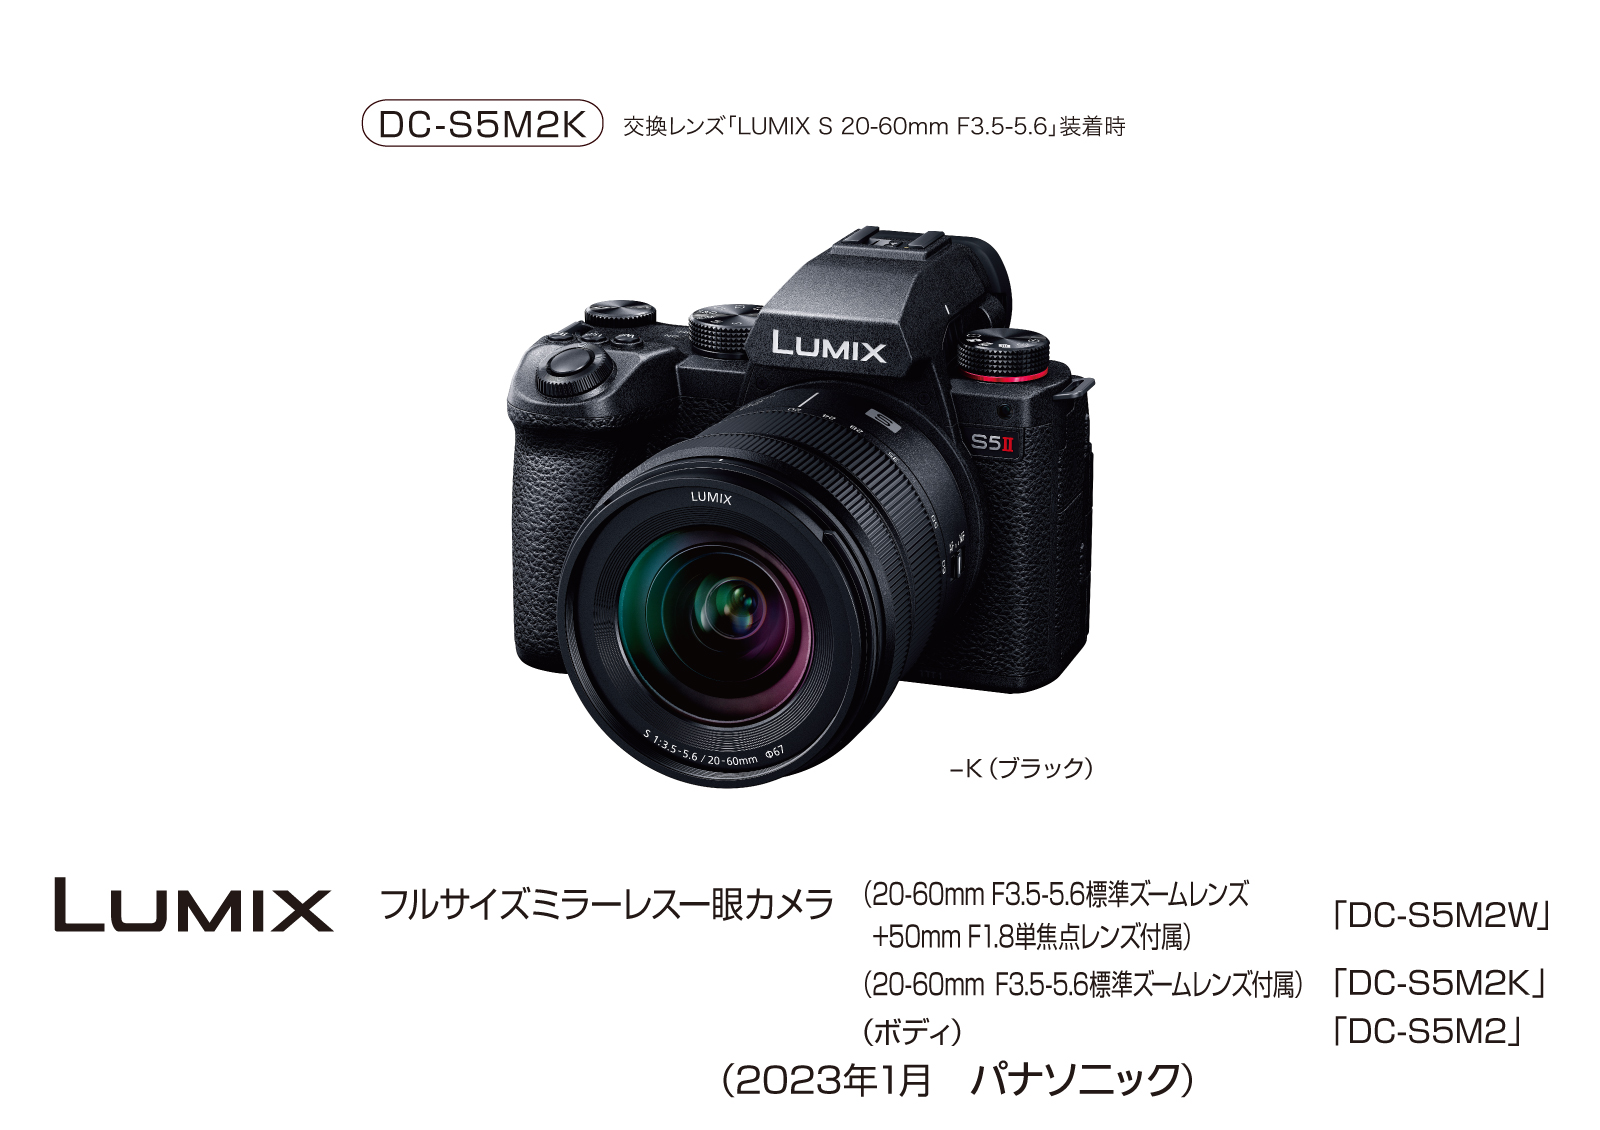 フルサイズミラーレス一眼カメラ LUIMIX DC-S5M2